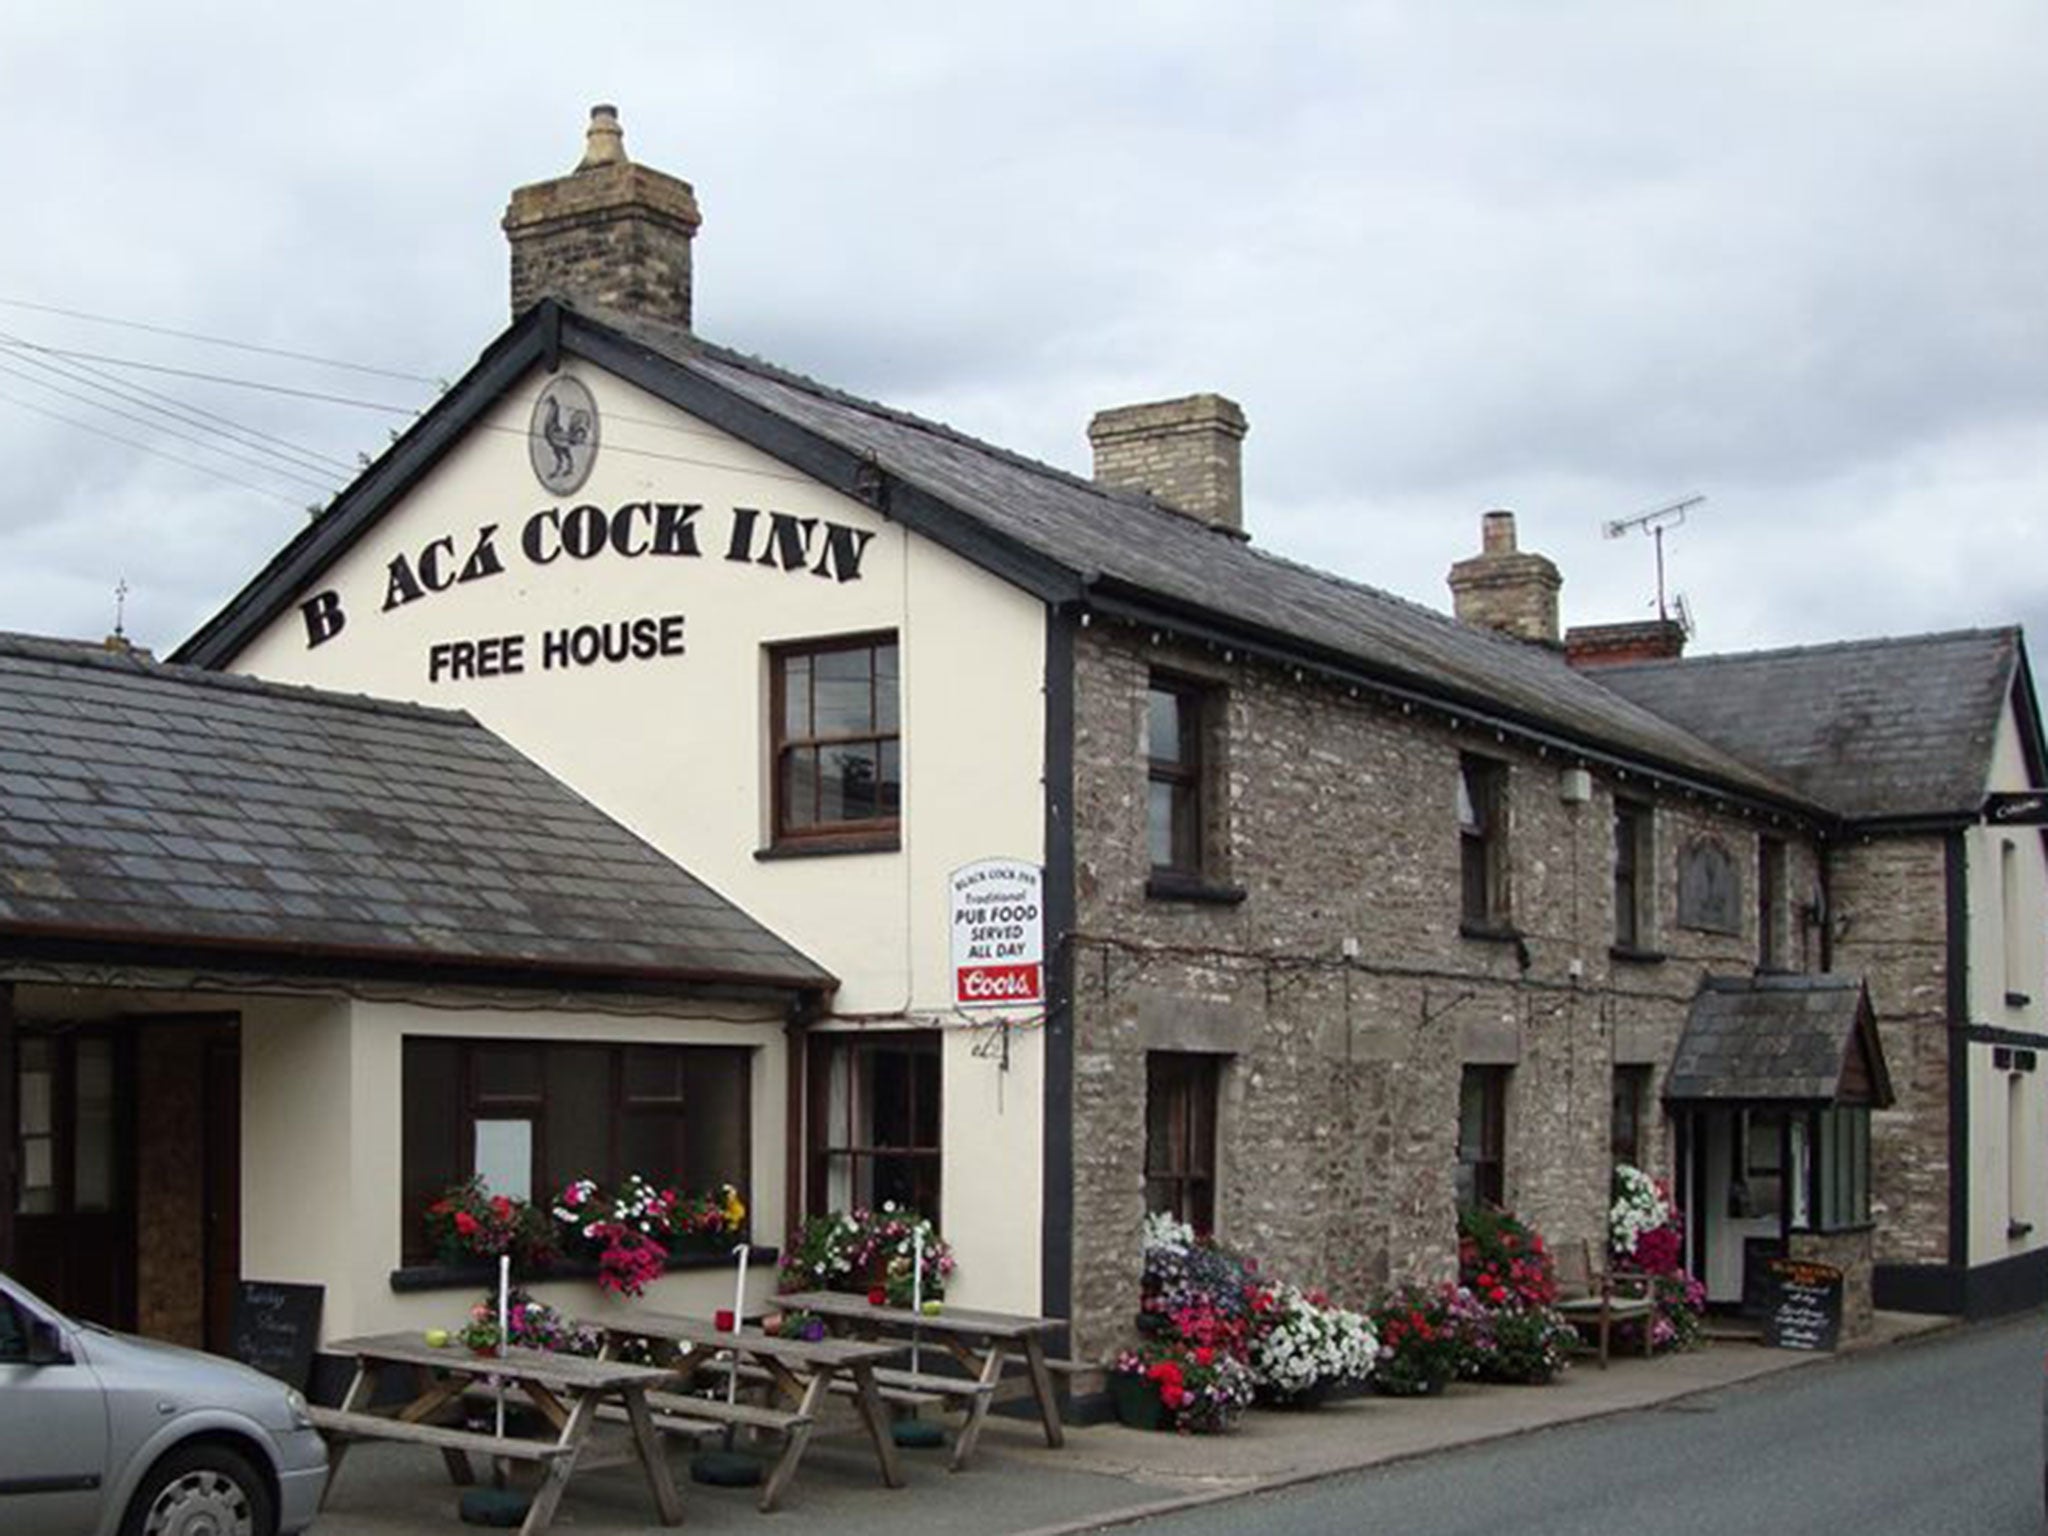 The Blackcock Inn in Llanfihangel Talyllyn, Wales